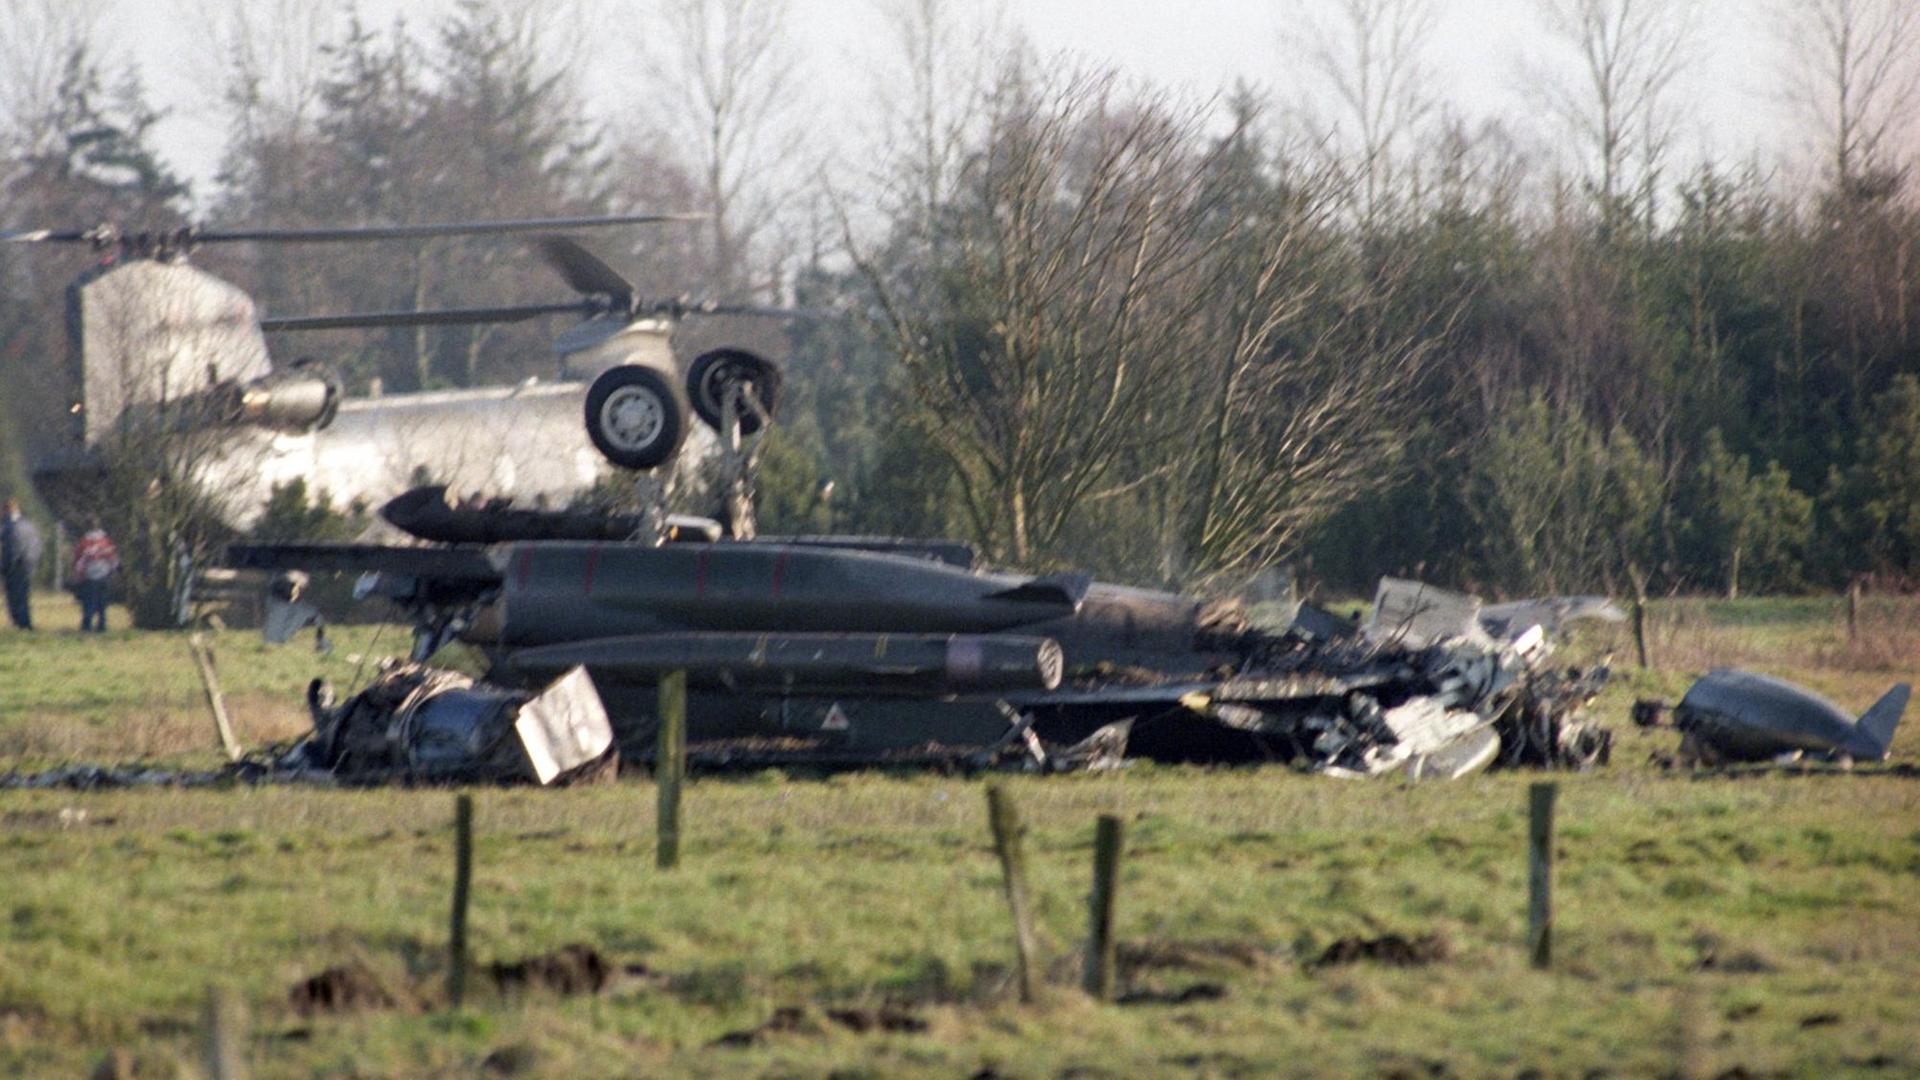 Das Wrack an der Absturzstelle in der Nähe einer Schule bei Wiesmoor, Niedersachsen, am 13.01.1989. Ein britischer Tornado war in eine deutsche Alphajet-Staffel geflogen und kollidiert. Zwei britische Soldaten starben.